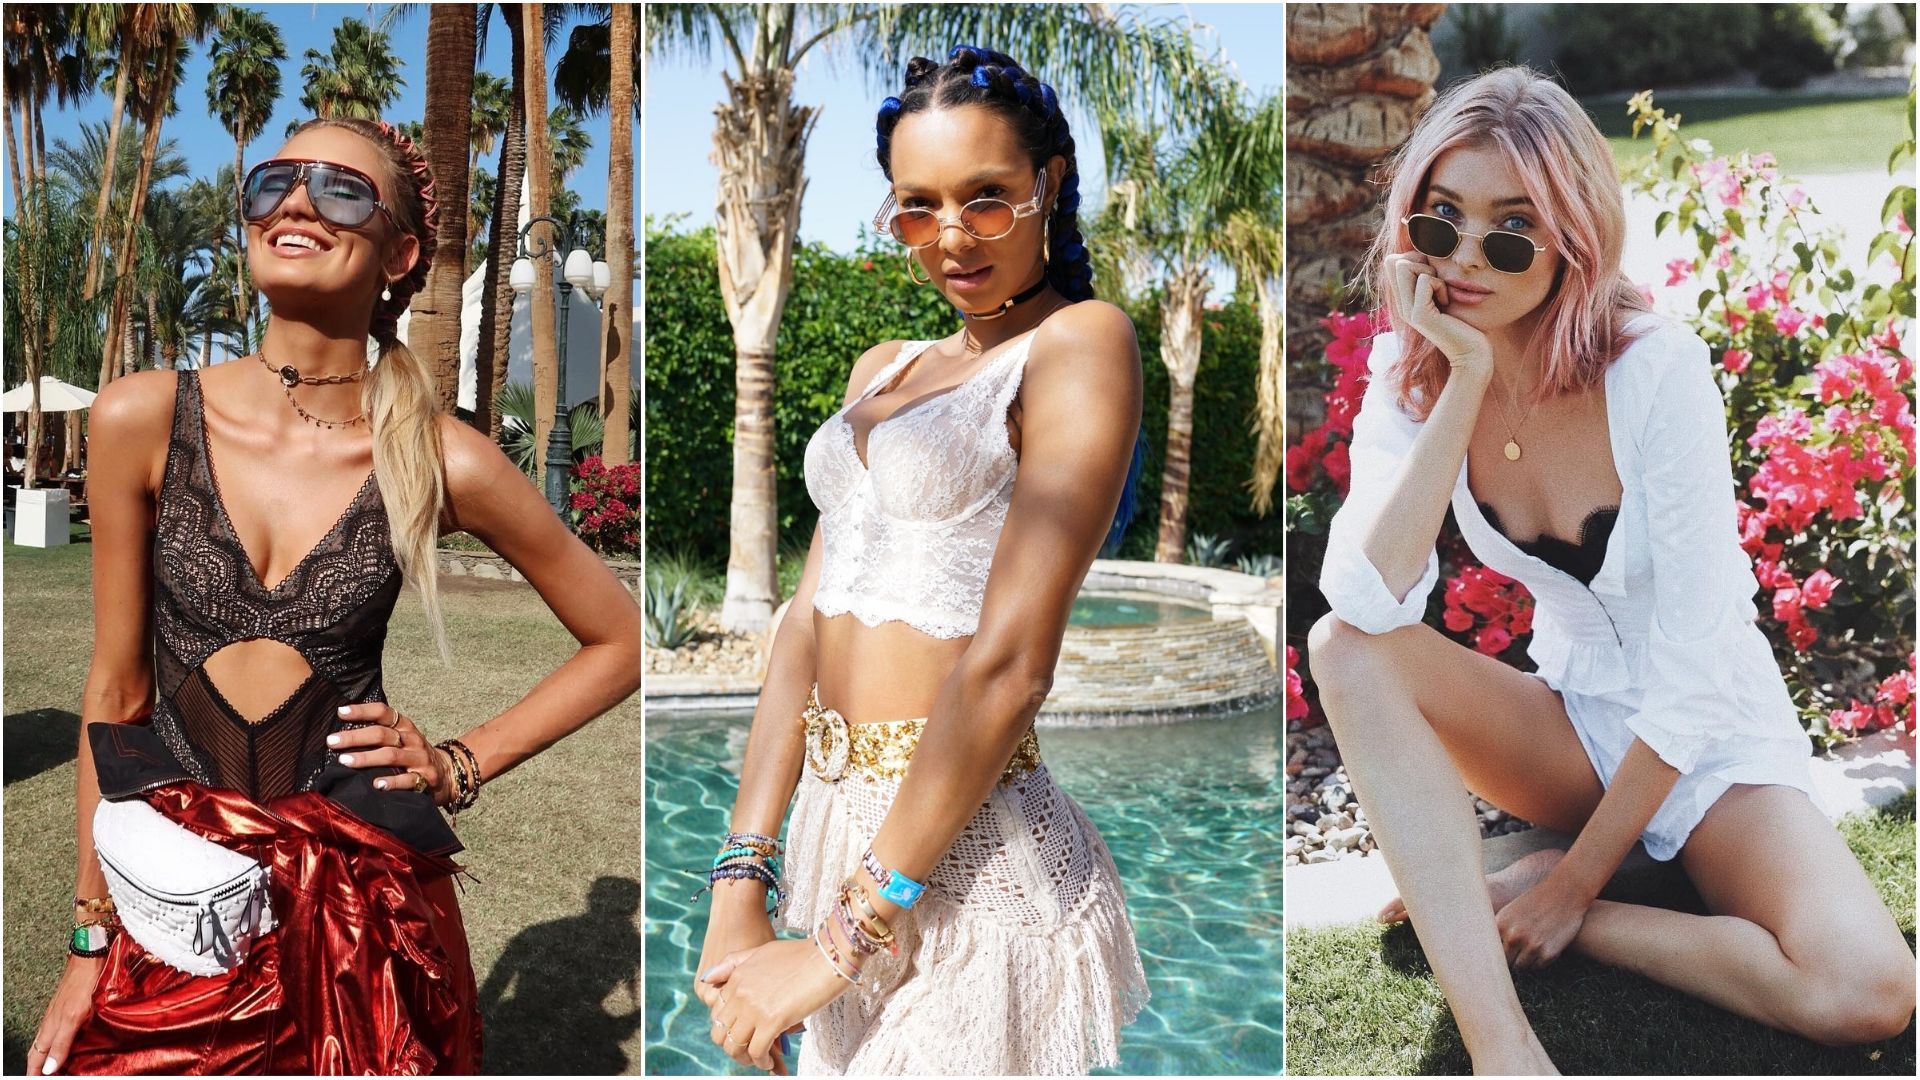 Модели Victoria's Secret на знаменитом фестивале Coachella 2018: фото лучших образов